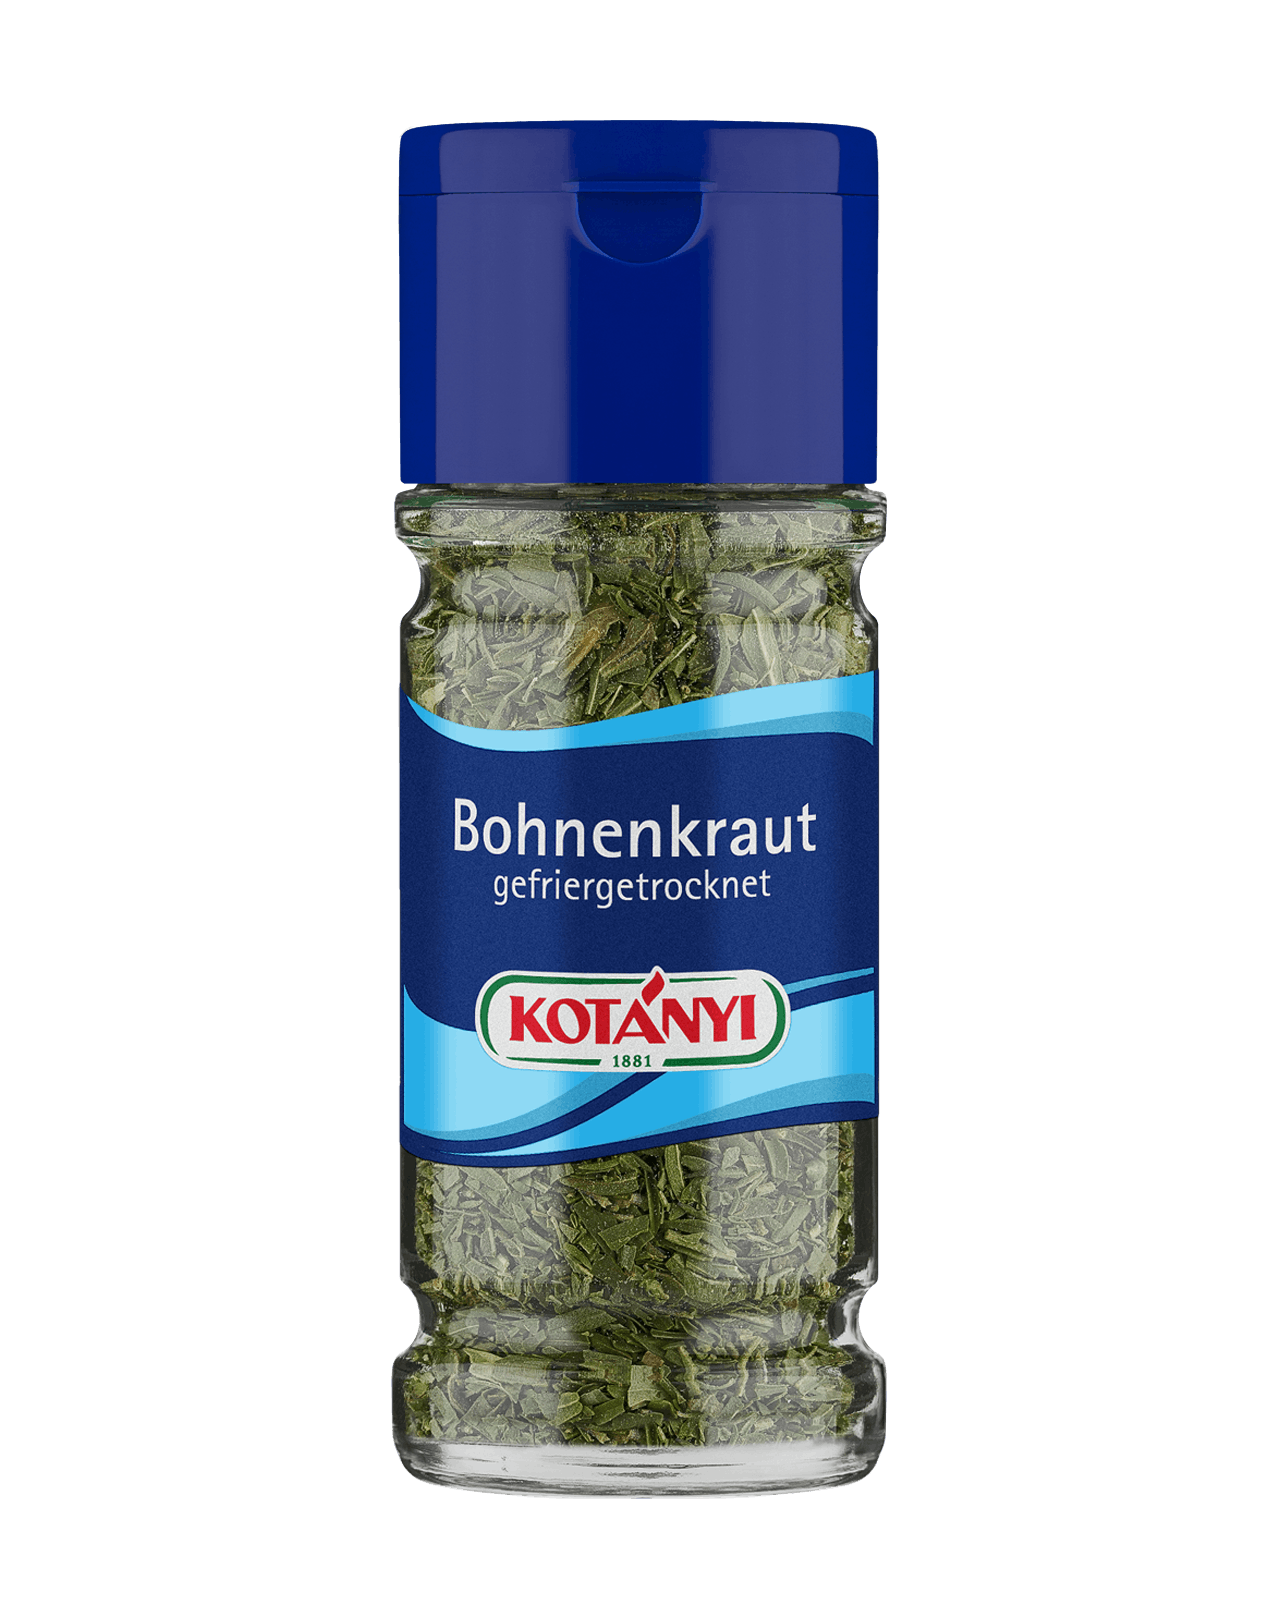 5739016 Bohnenkraut Gefriergetrocknet Glas Kotanyi